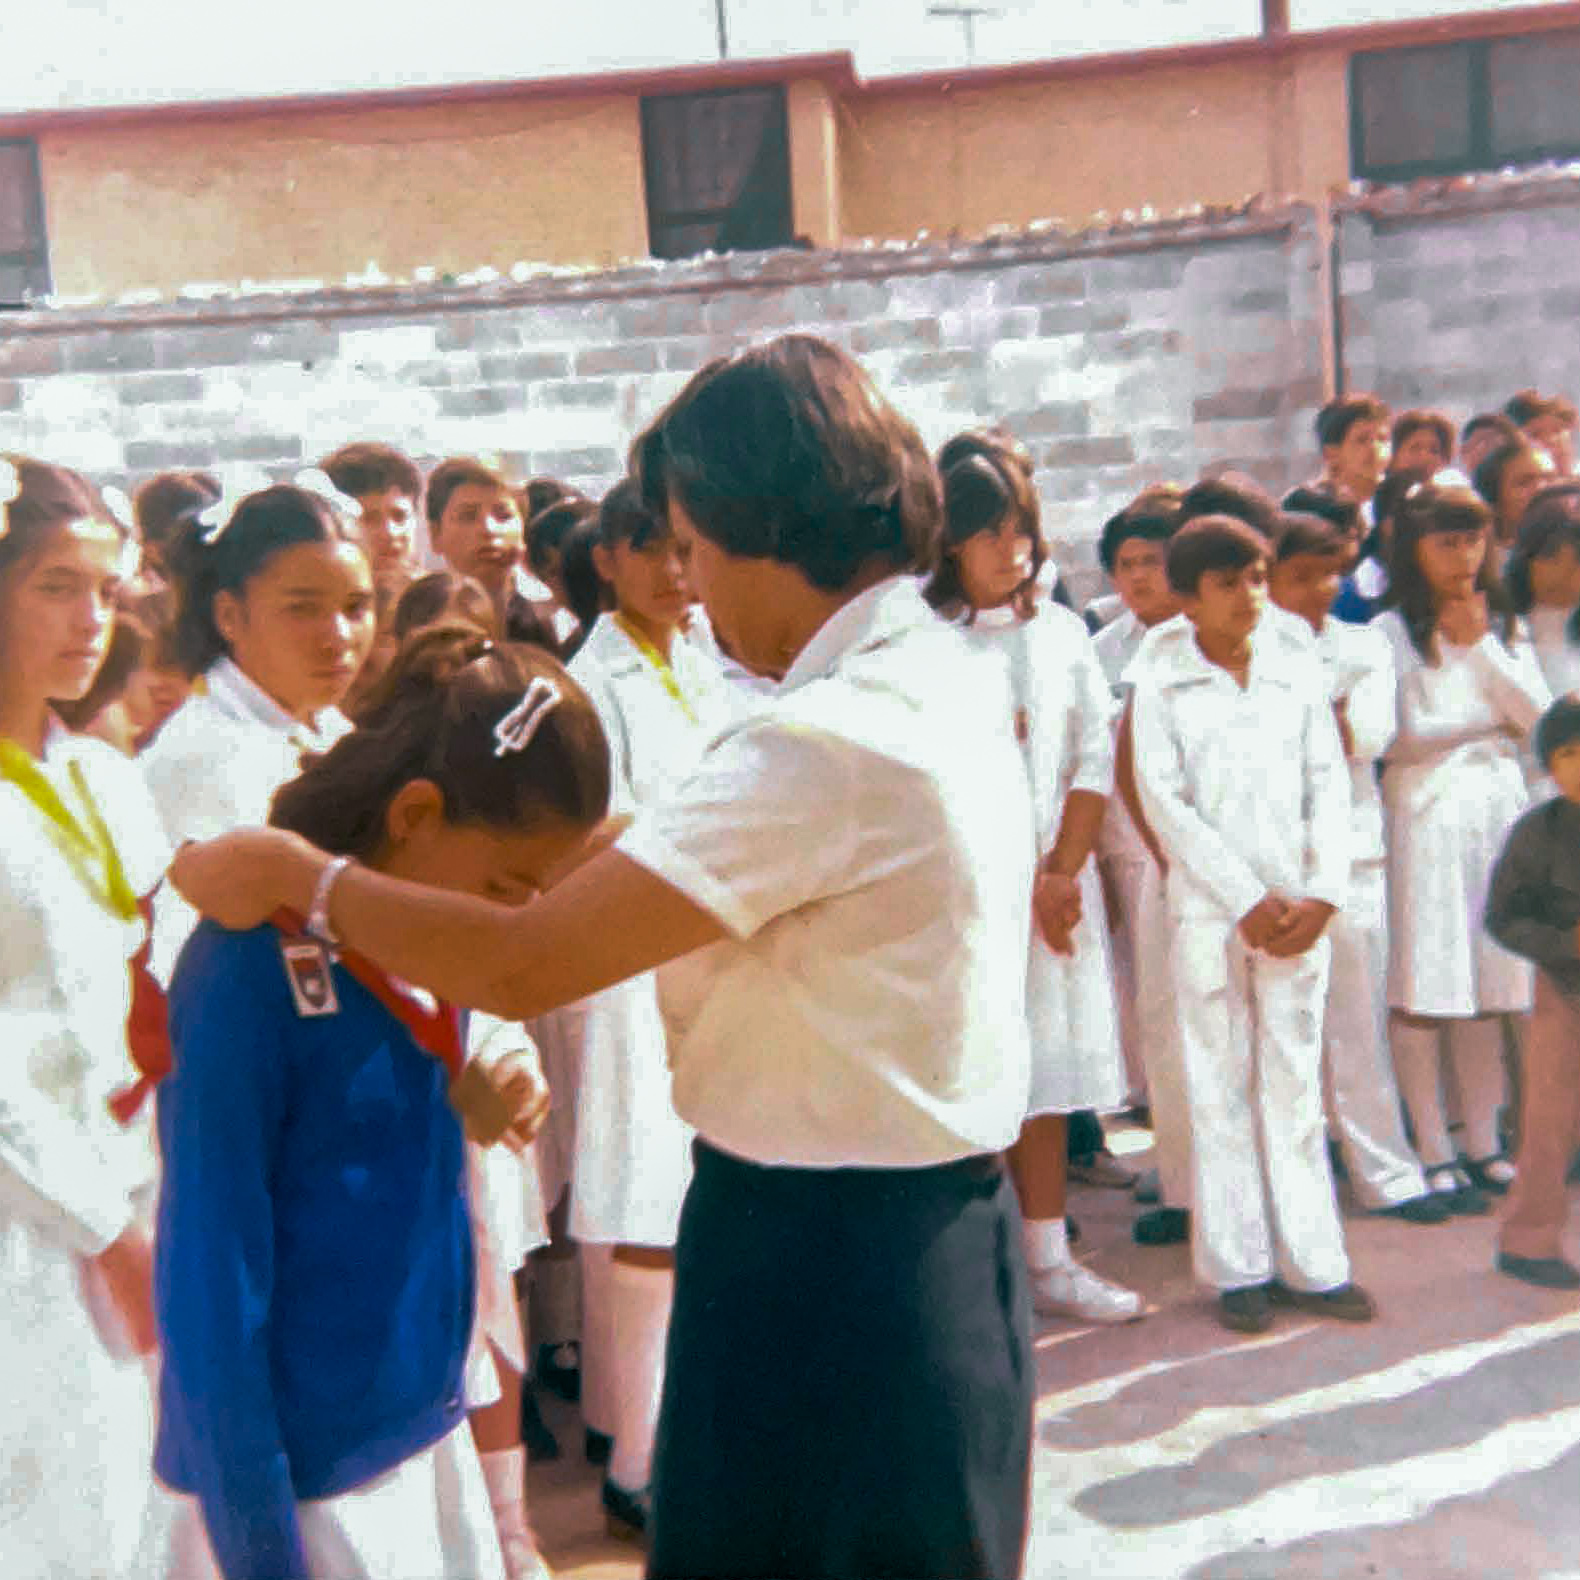 Una niña de escuela primaria con un cárdigan azul se inclina para aceptar una medalla alrededor de su cuello que le entrega una mujer con una blusa blanca y una falda oscura.